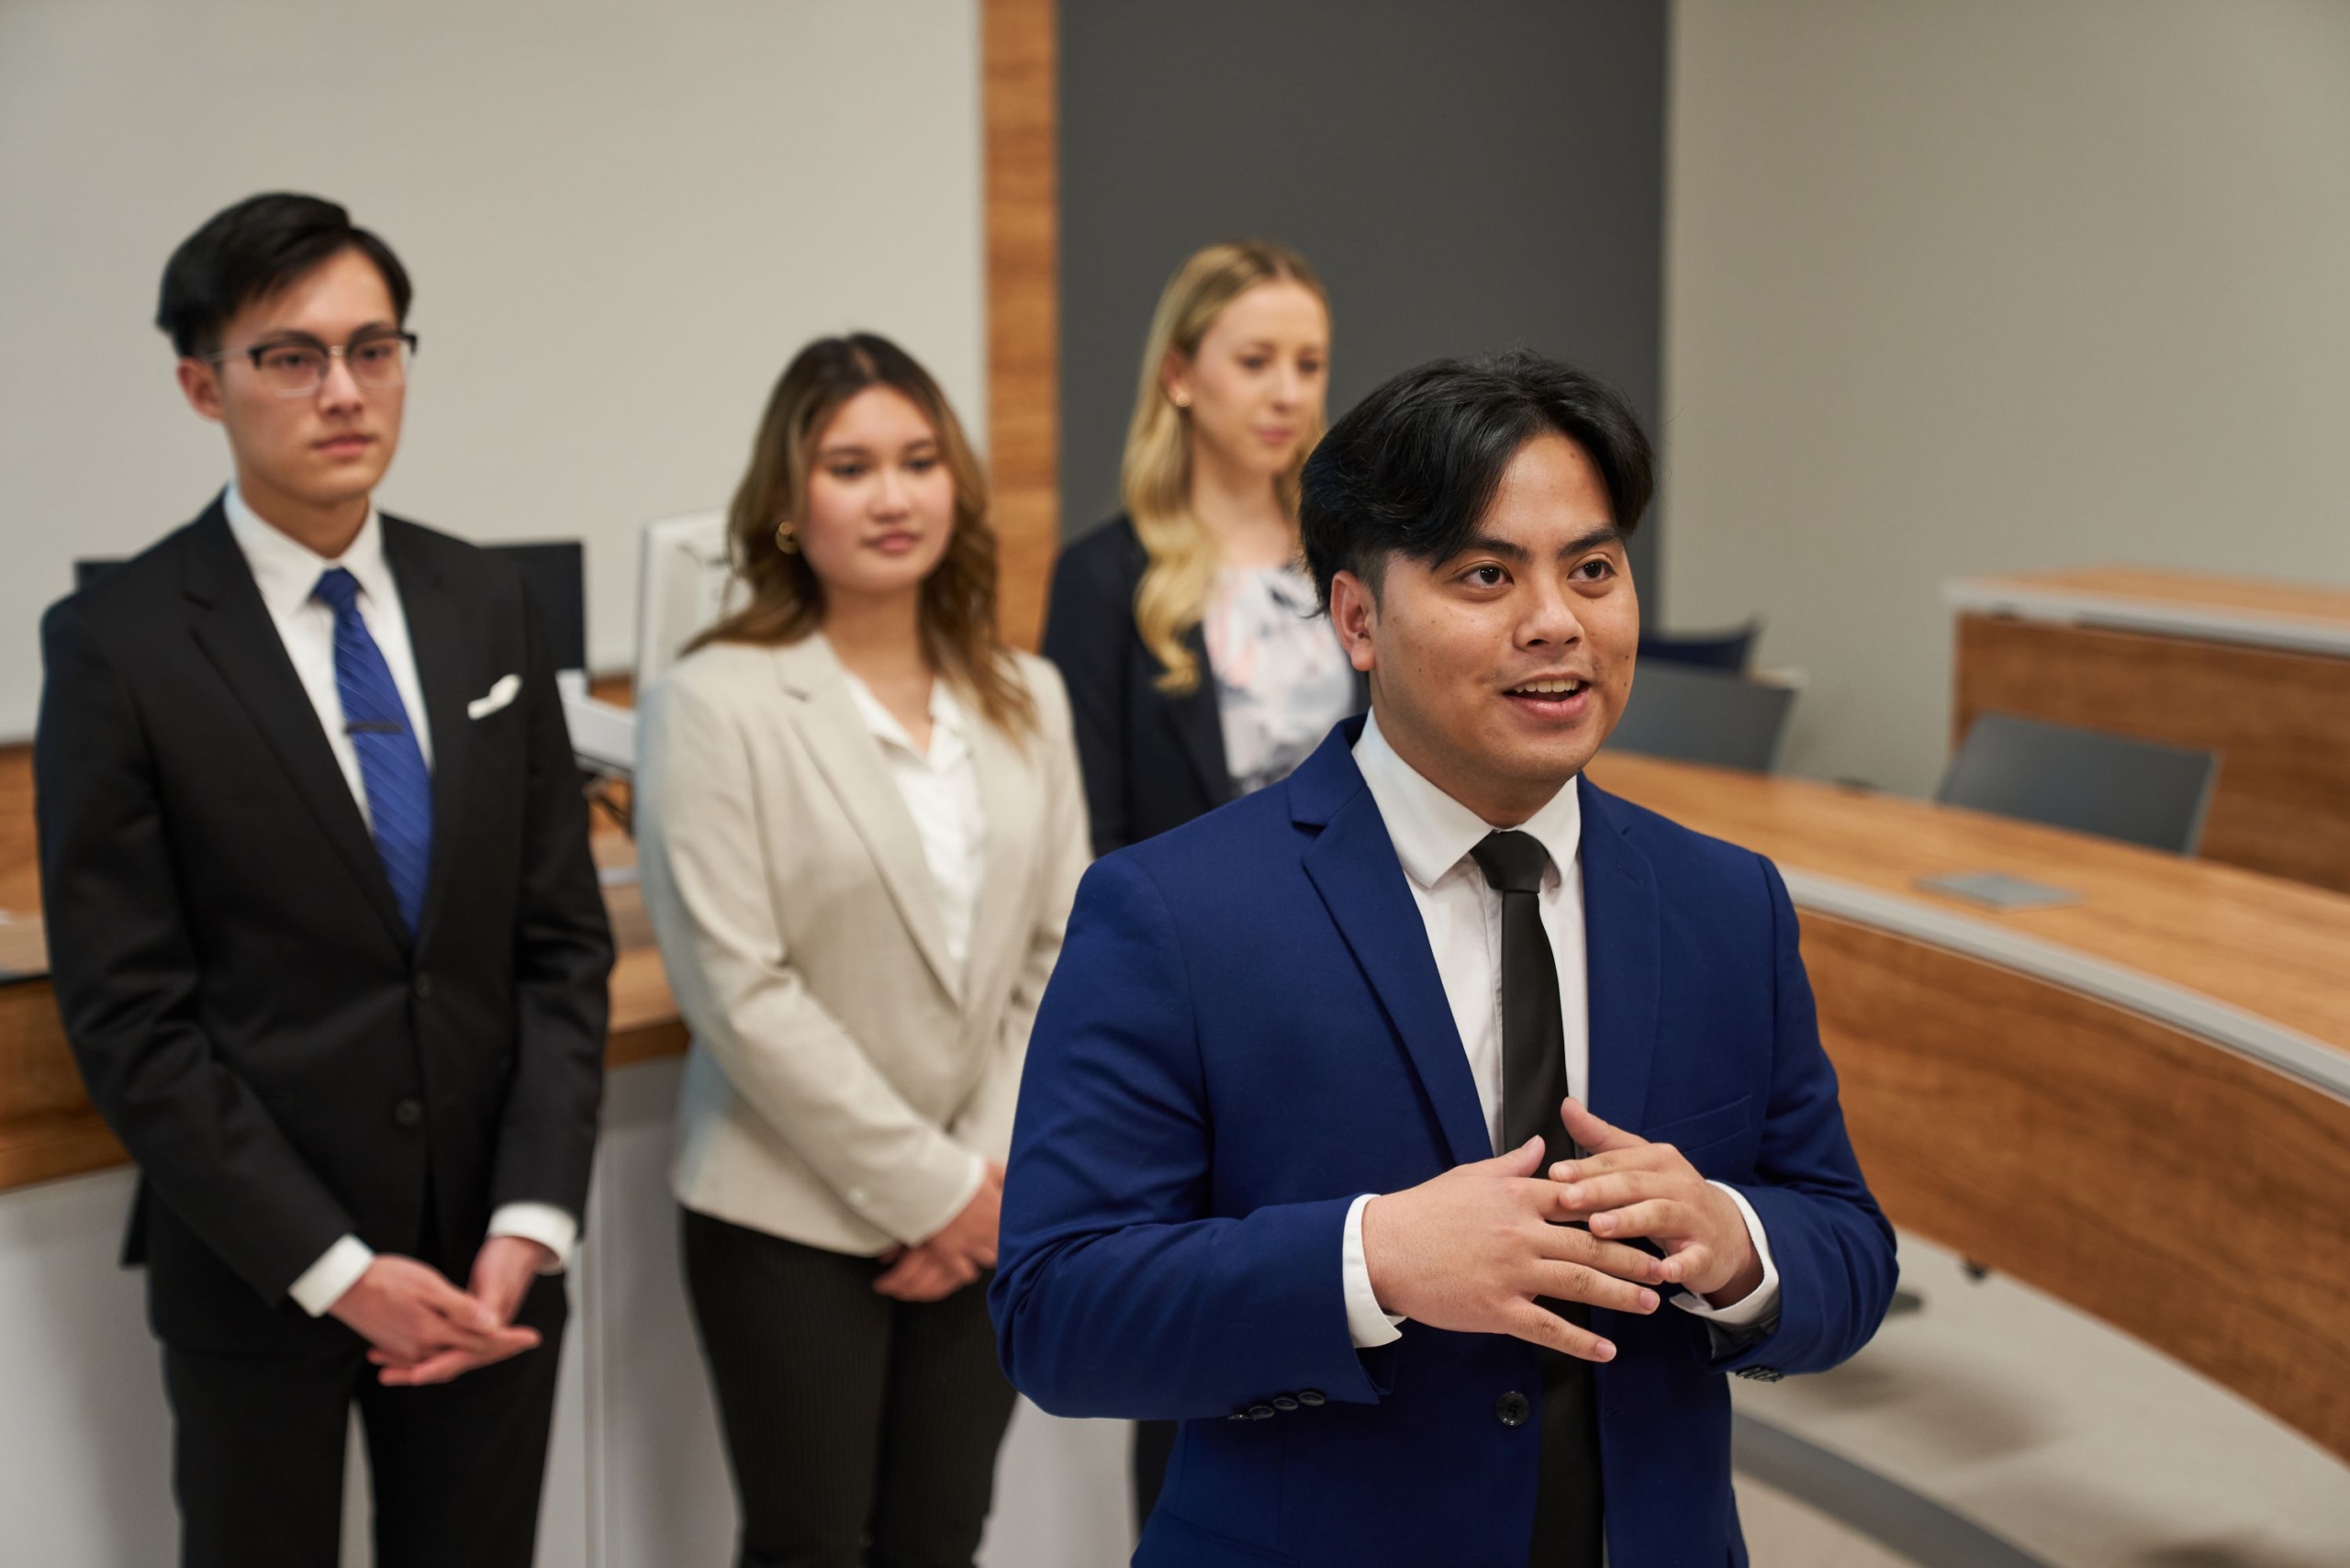 Khoa Luật và Trường Kinh doanh Asper triển khai đồng thời JD/MBA tại Đại học Manitoba